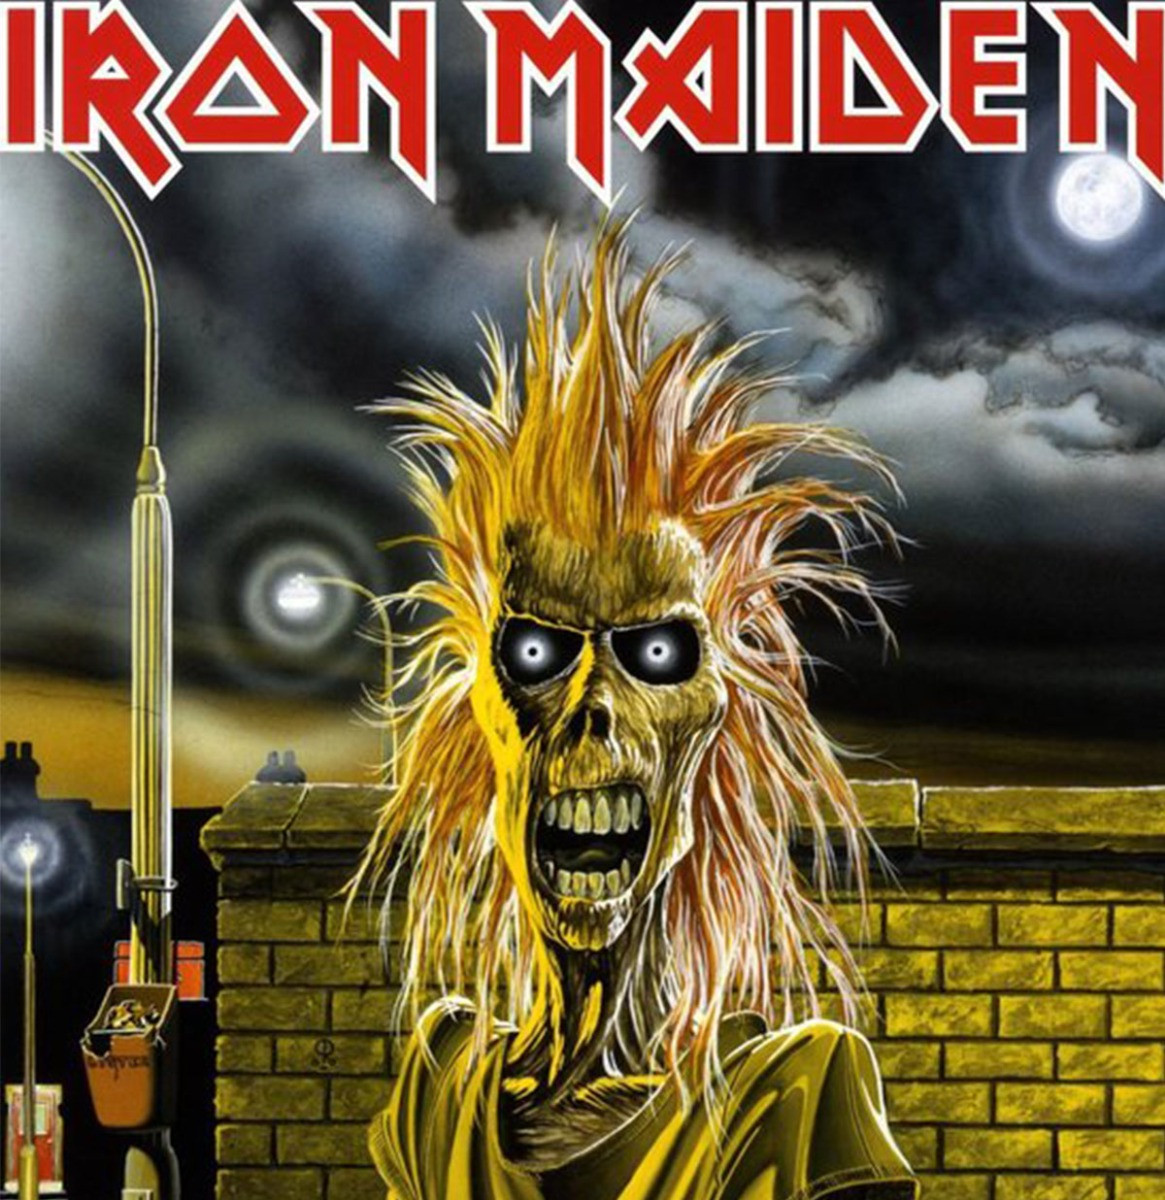 Iron Maiden - Iron Maiden LP